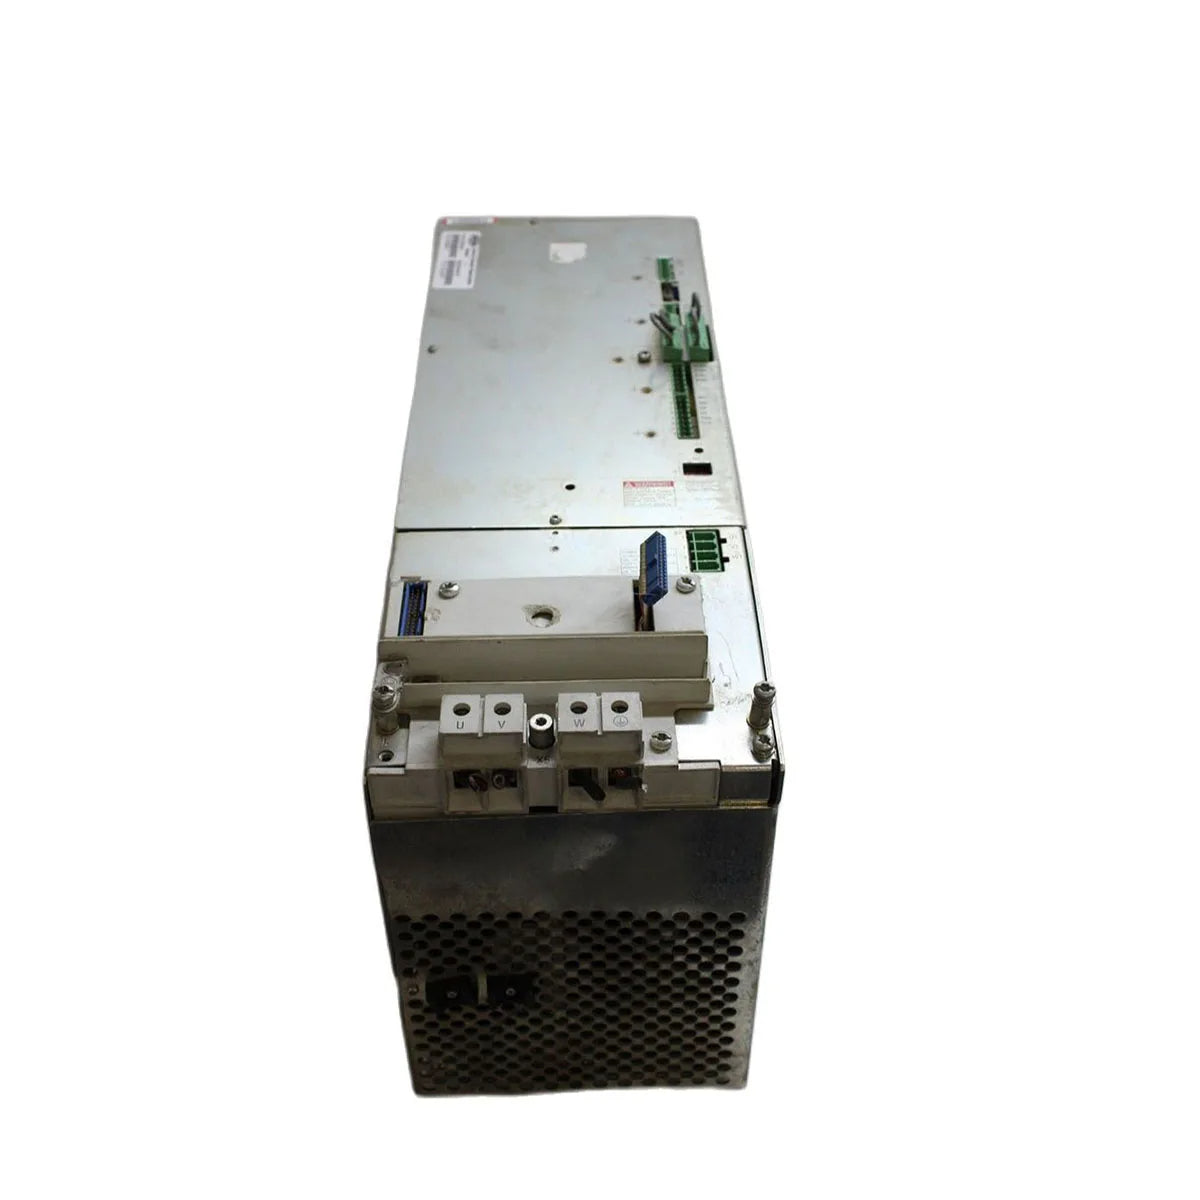 HVR02.2-W025N Indramat Servo Power Supply Used